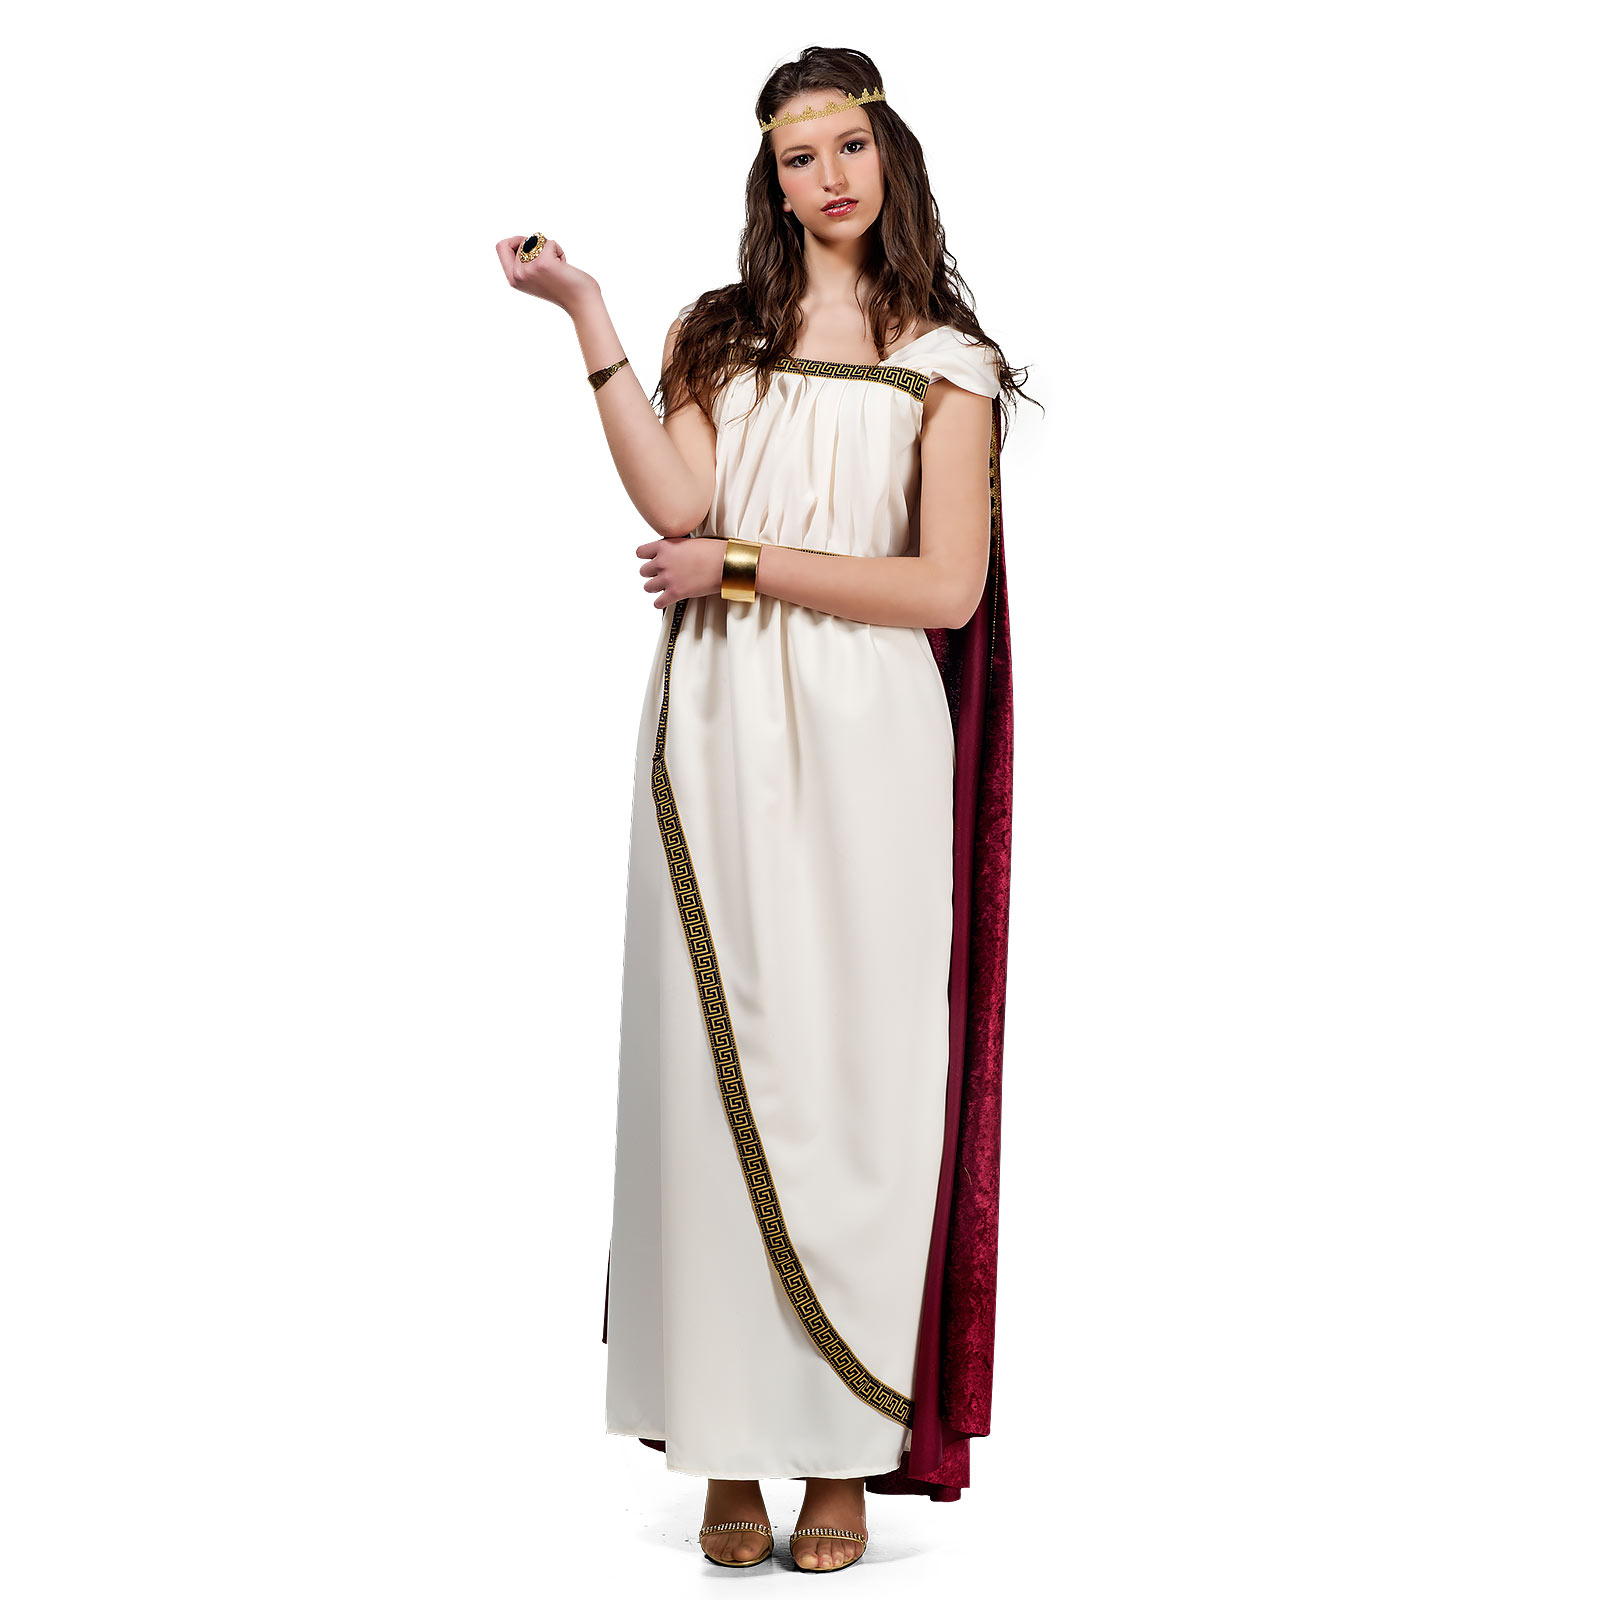 Trojan Woman - Women's Costume